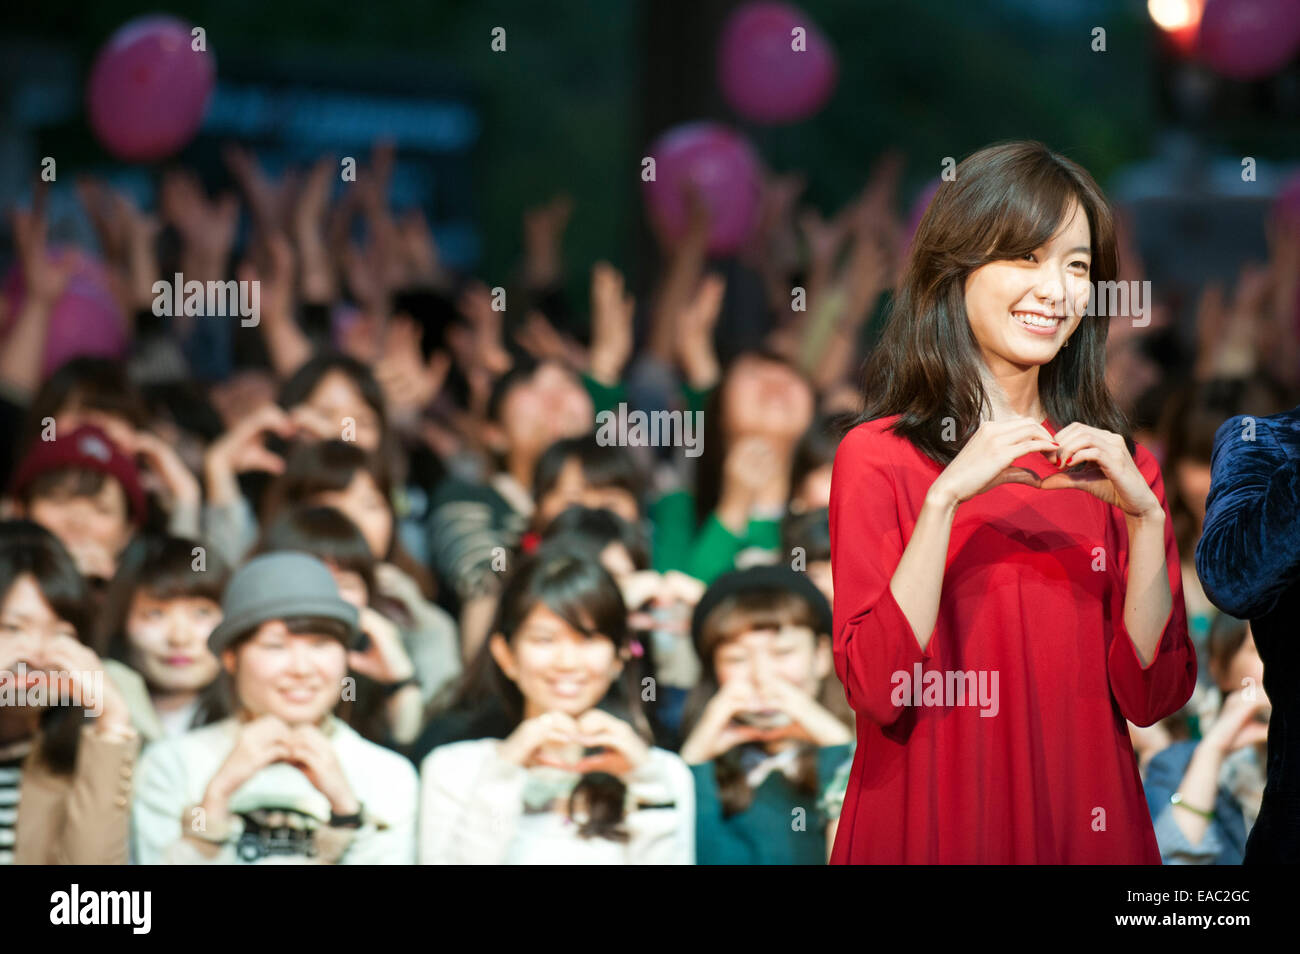 L'attrice Hyo-Joo Han assiste premiere evento per la sua prima apparizione nel film giapponese a Tokyo International Film Festival. Foto Stock